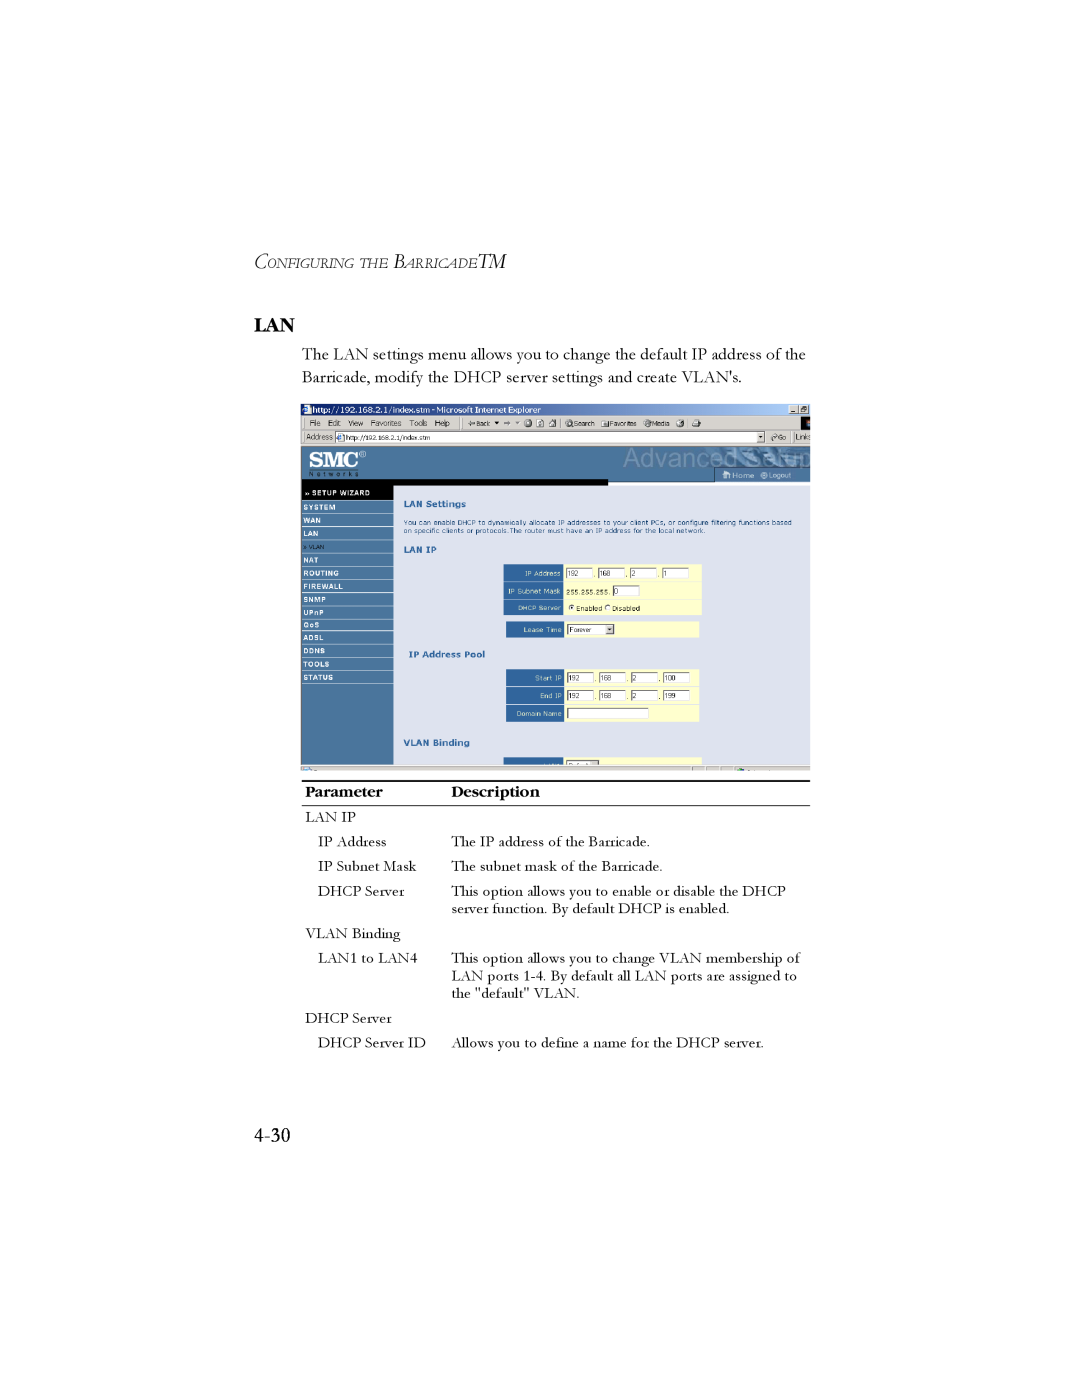 SMC Networks SMC7904BRB2 manual 4-30, Parameter, Description 